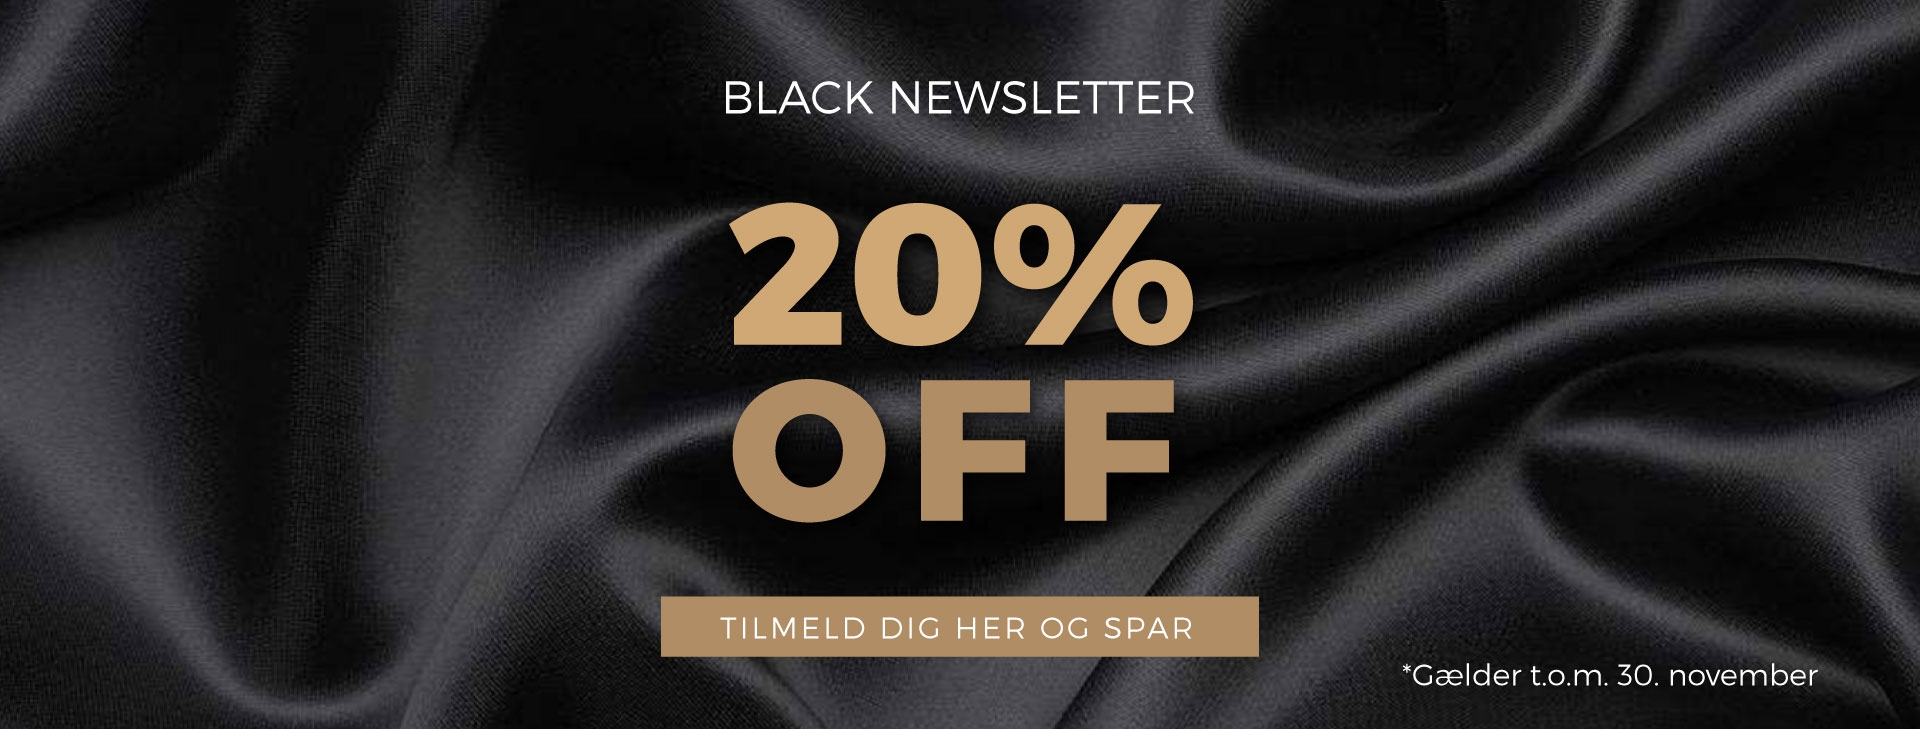 Black Newsletter